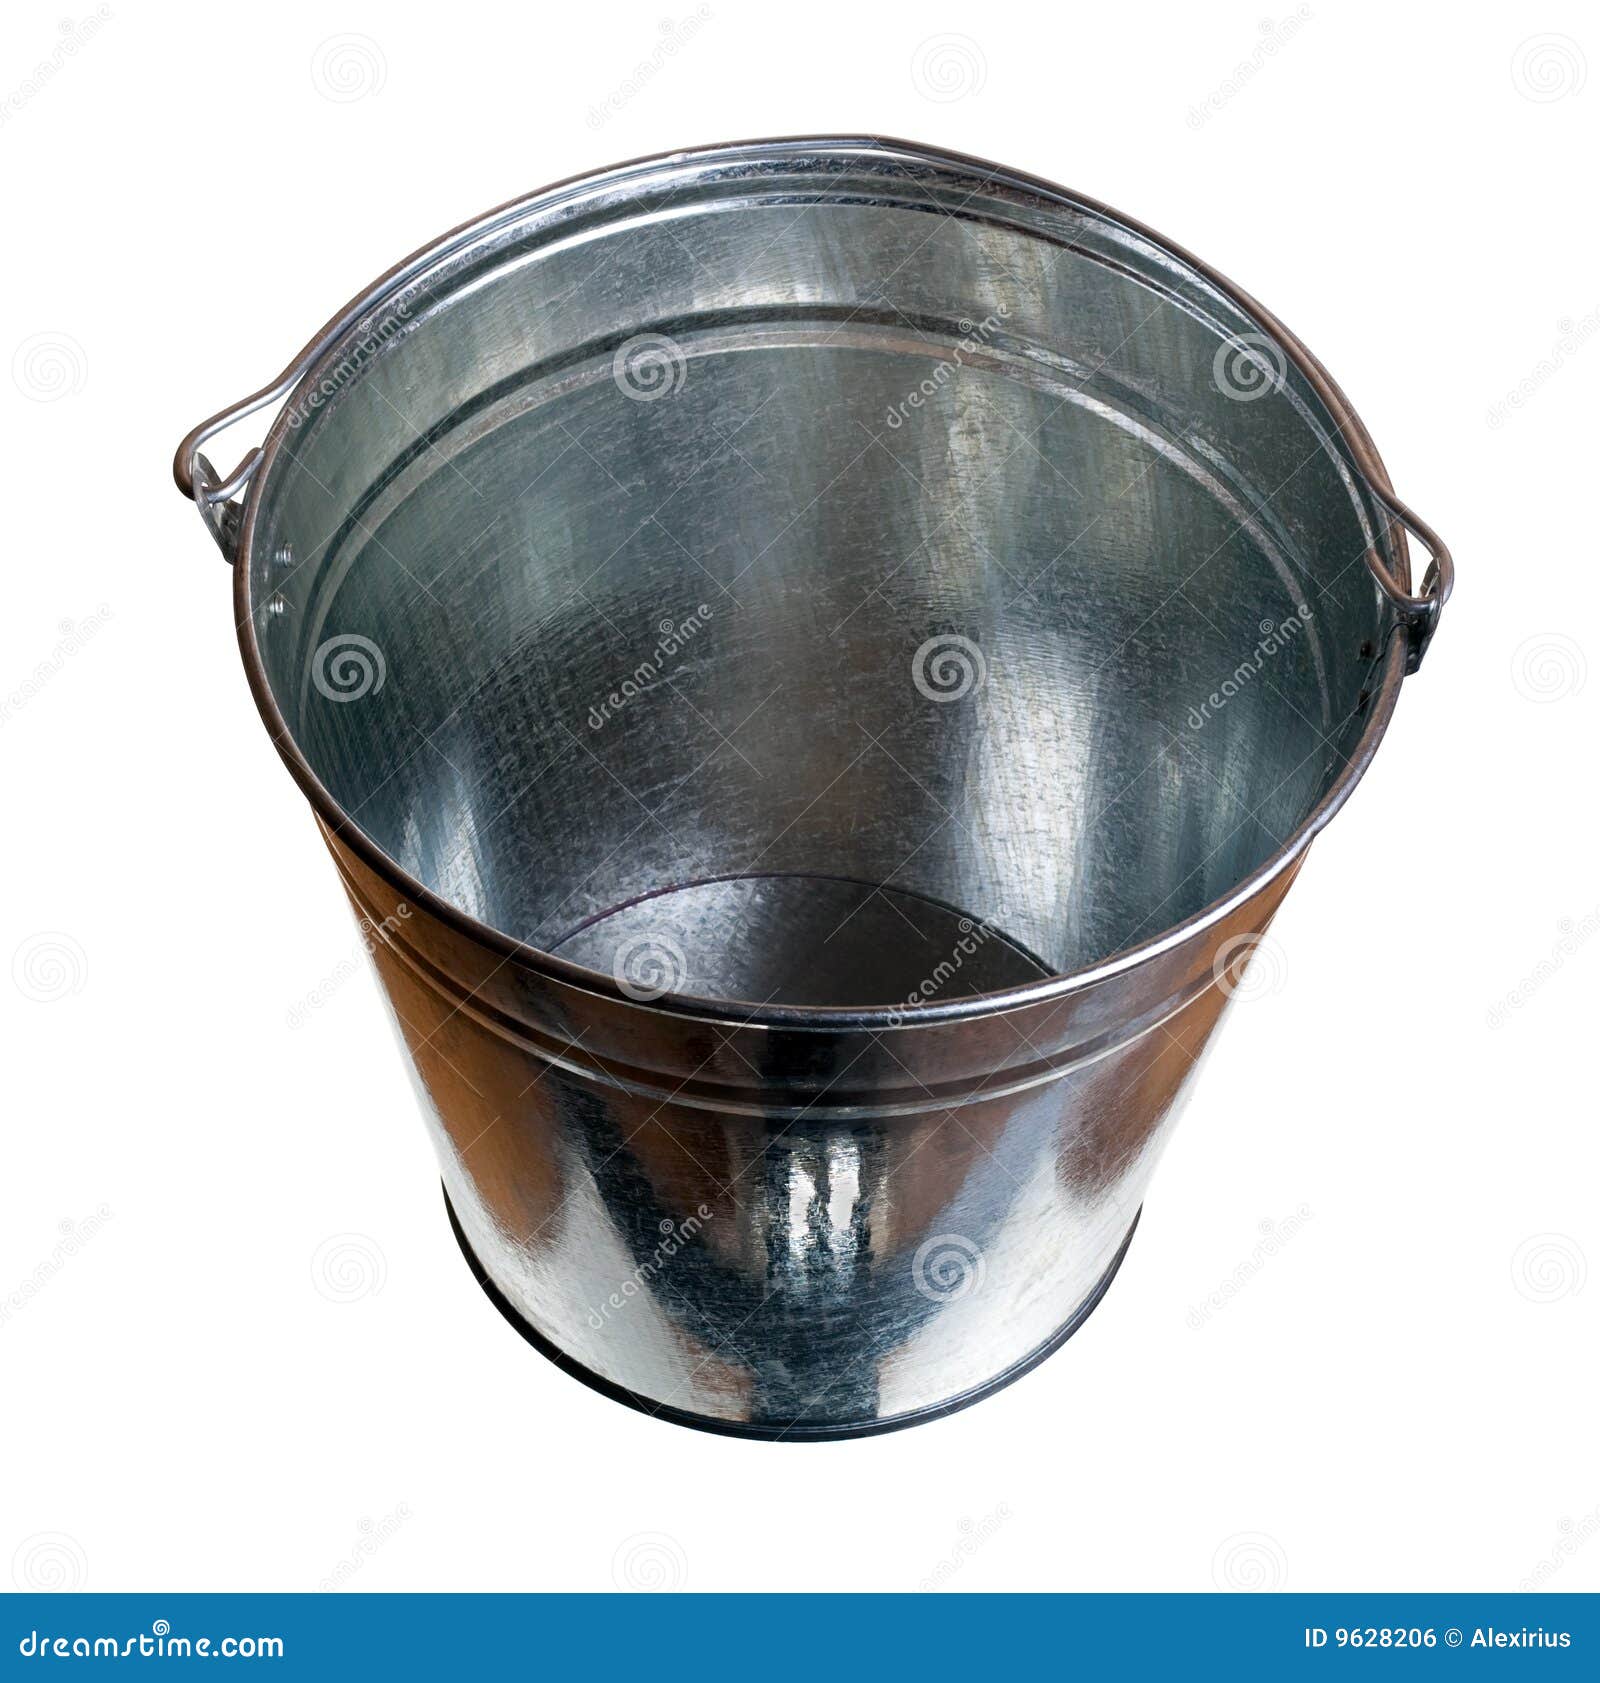 Resultado de imagen de steel bucket free images